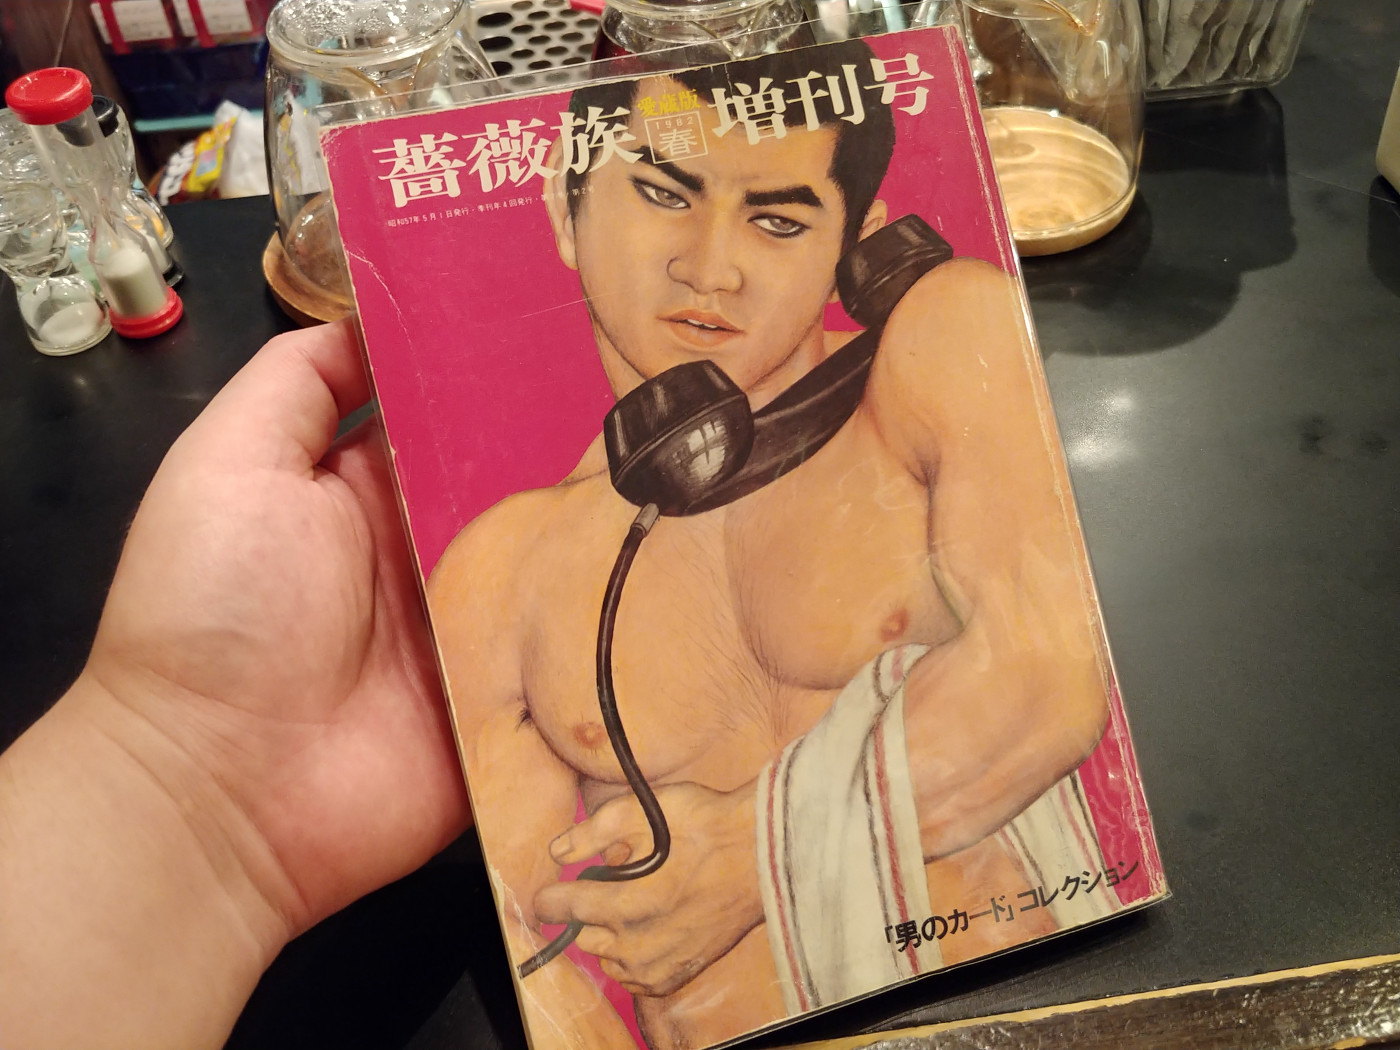 ホモ本ブックカフェ オカマルト で日本初のゲイ雑誌をチェック 生まれ年のゲイシーンも振り返ってみました Buzzap